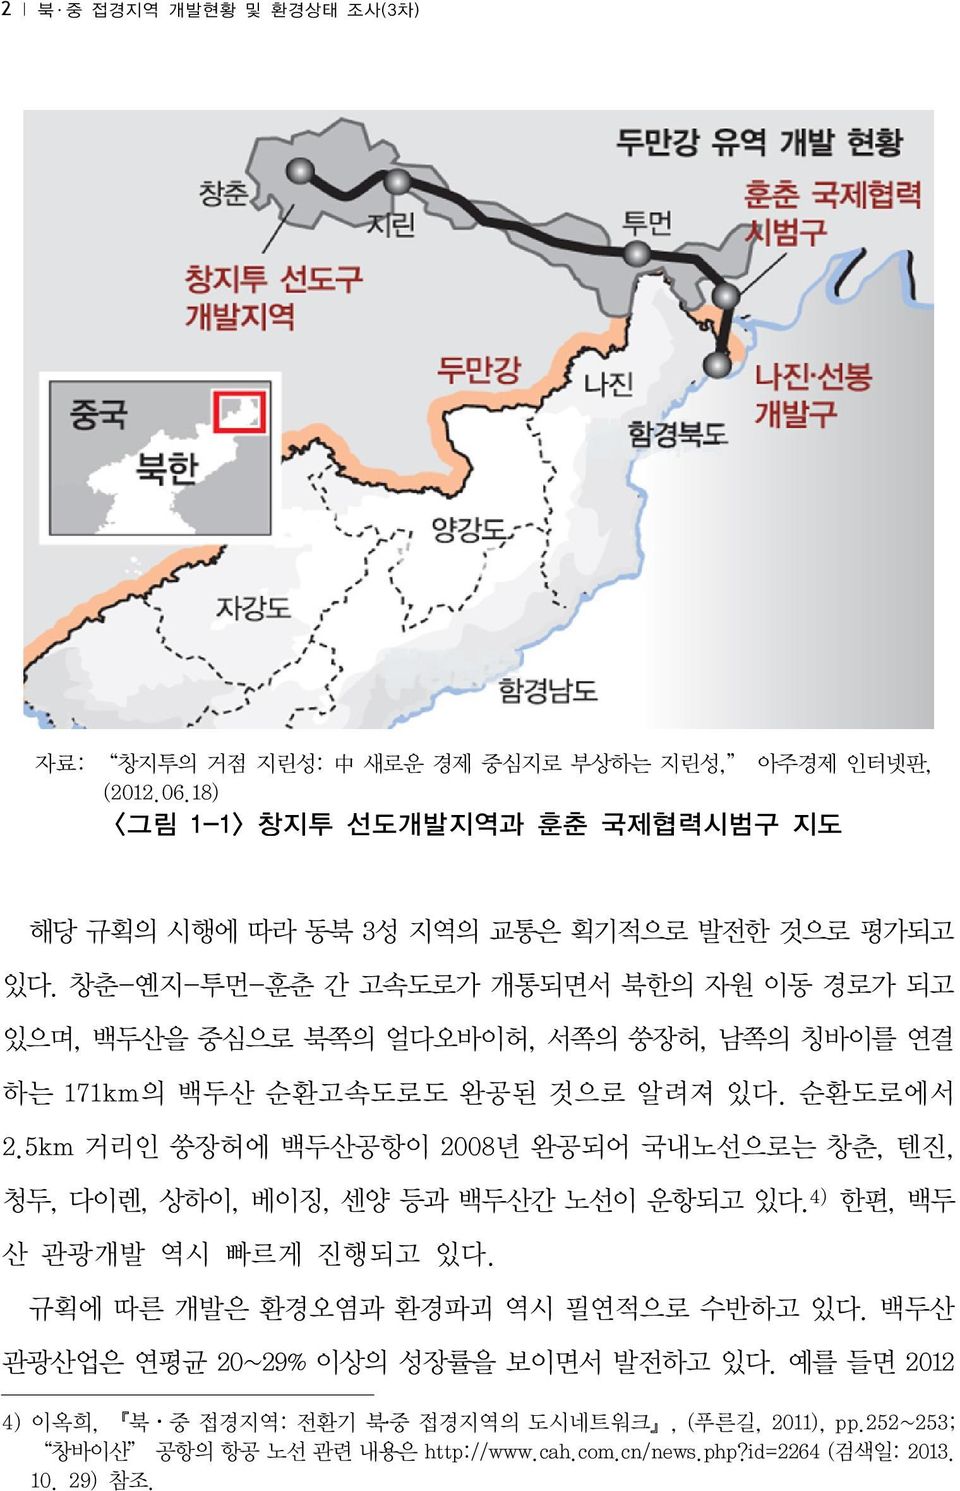 창춘-옌지-투먼-훈춘 간 고속도로가 개통되면서 북한의 자원 이동 경로가 되고 있으며, 백두산을 중심으로 북쪽의 얼다오바이허, 서쪽의 쑹장허, 남쪽의 칭바이를 연결 하는 171km의 백두산 순환고속도로도 완공된 것으로 알려져 있다. 순환도로에서 2.